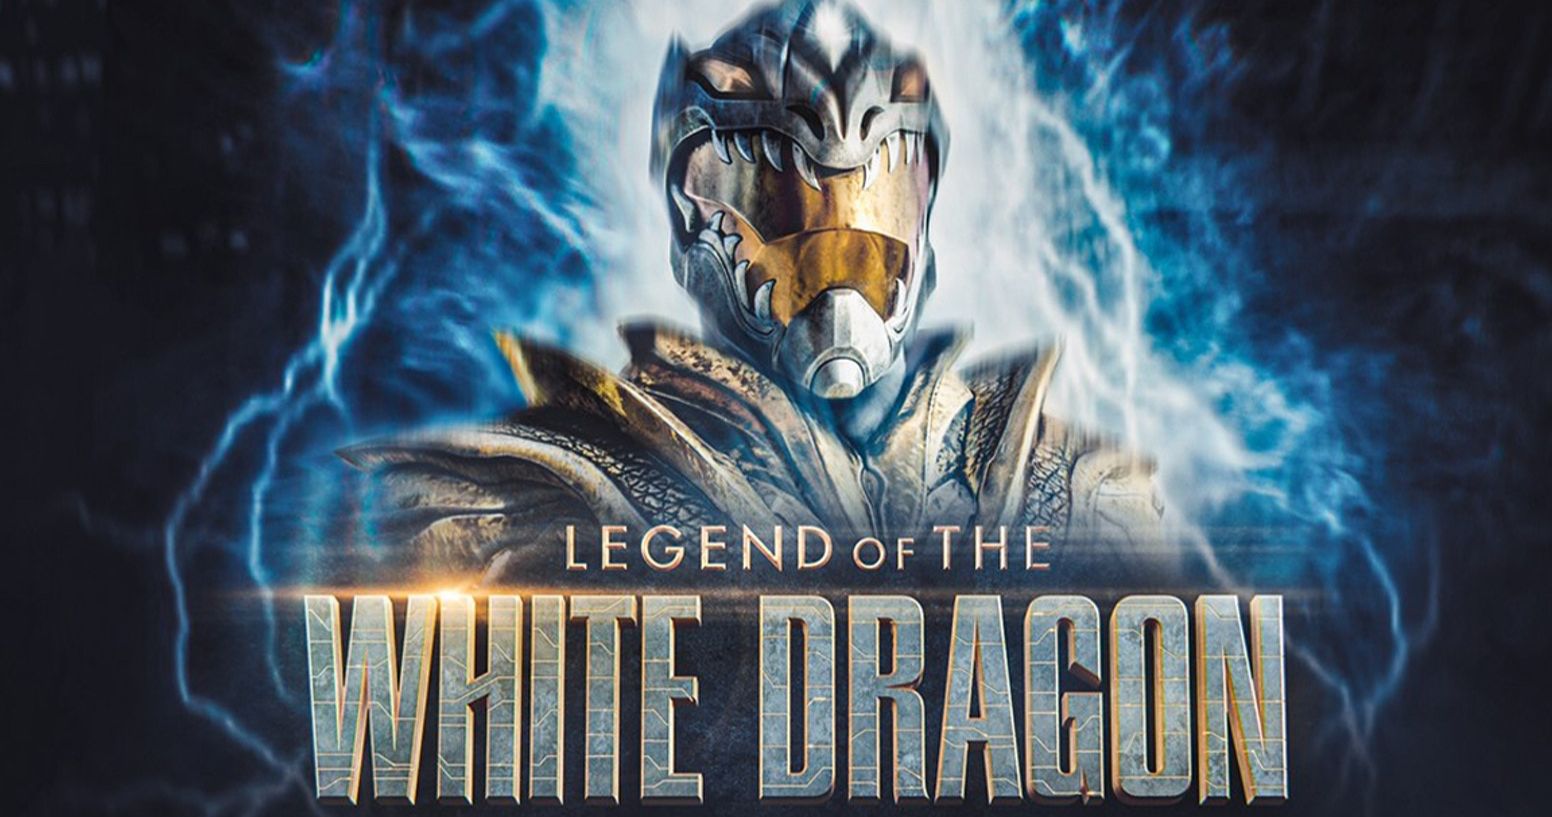 Power Rangers Inspired White Dragon Trailer Revealed by Jason David Frank